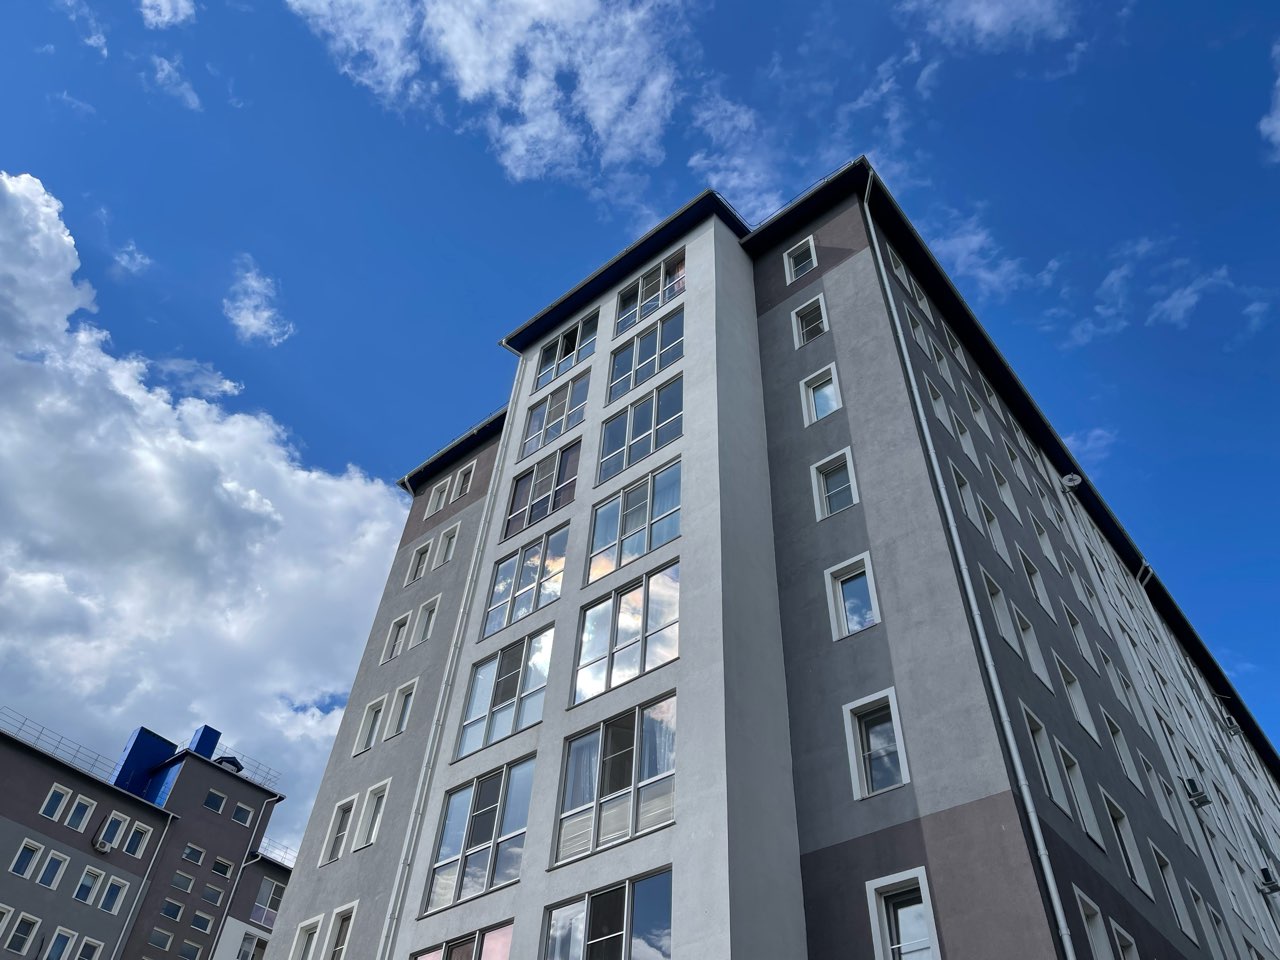 Тест-драйв квартир в новостройках появился в России - фото 1